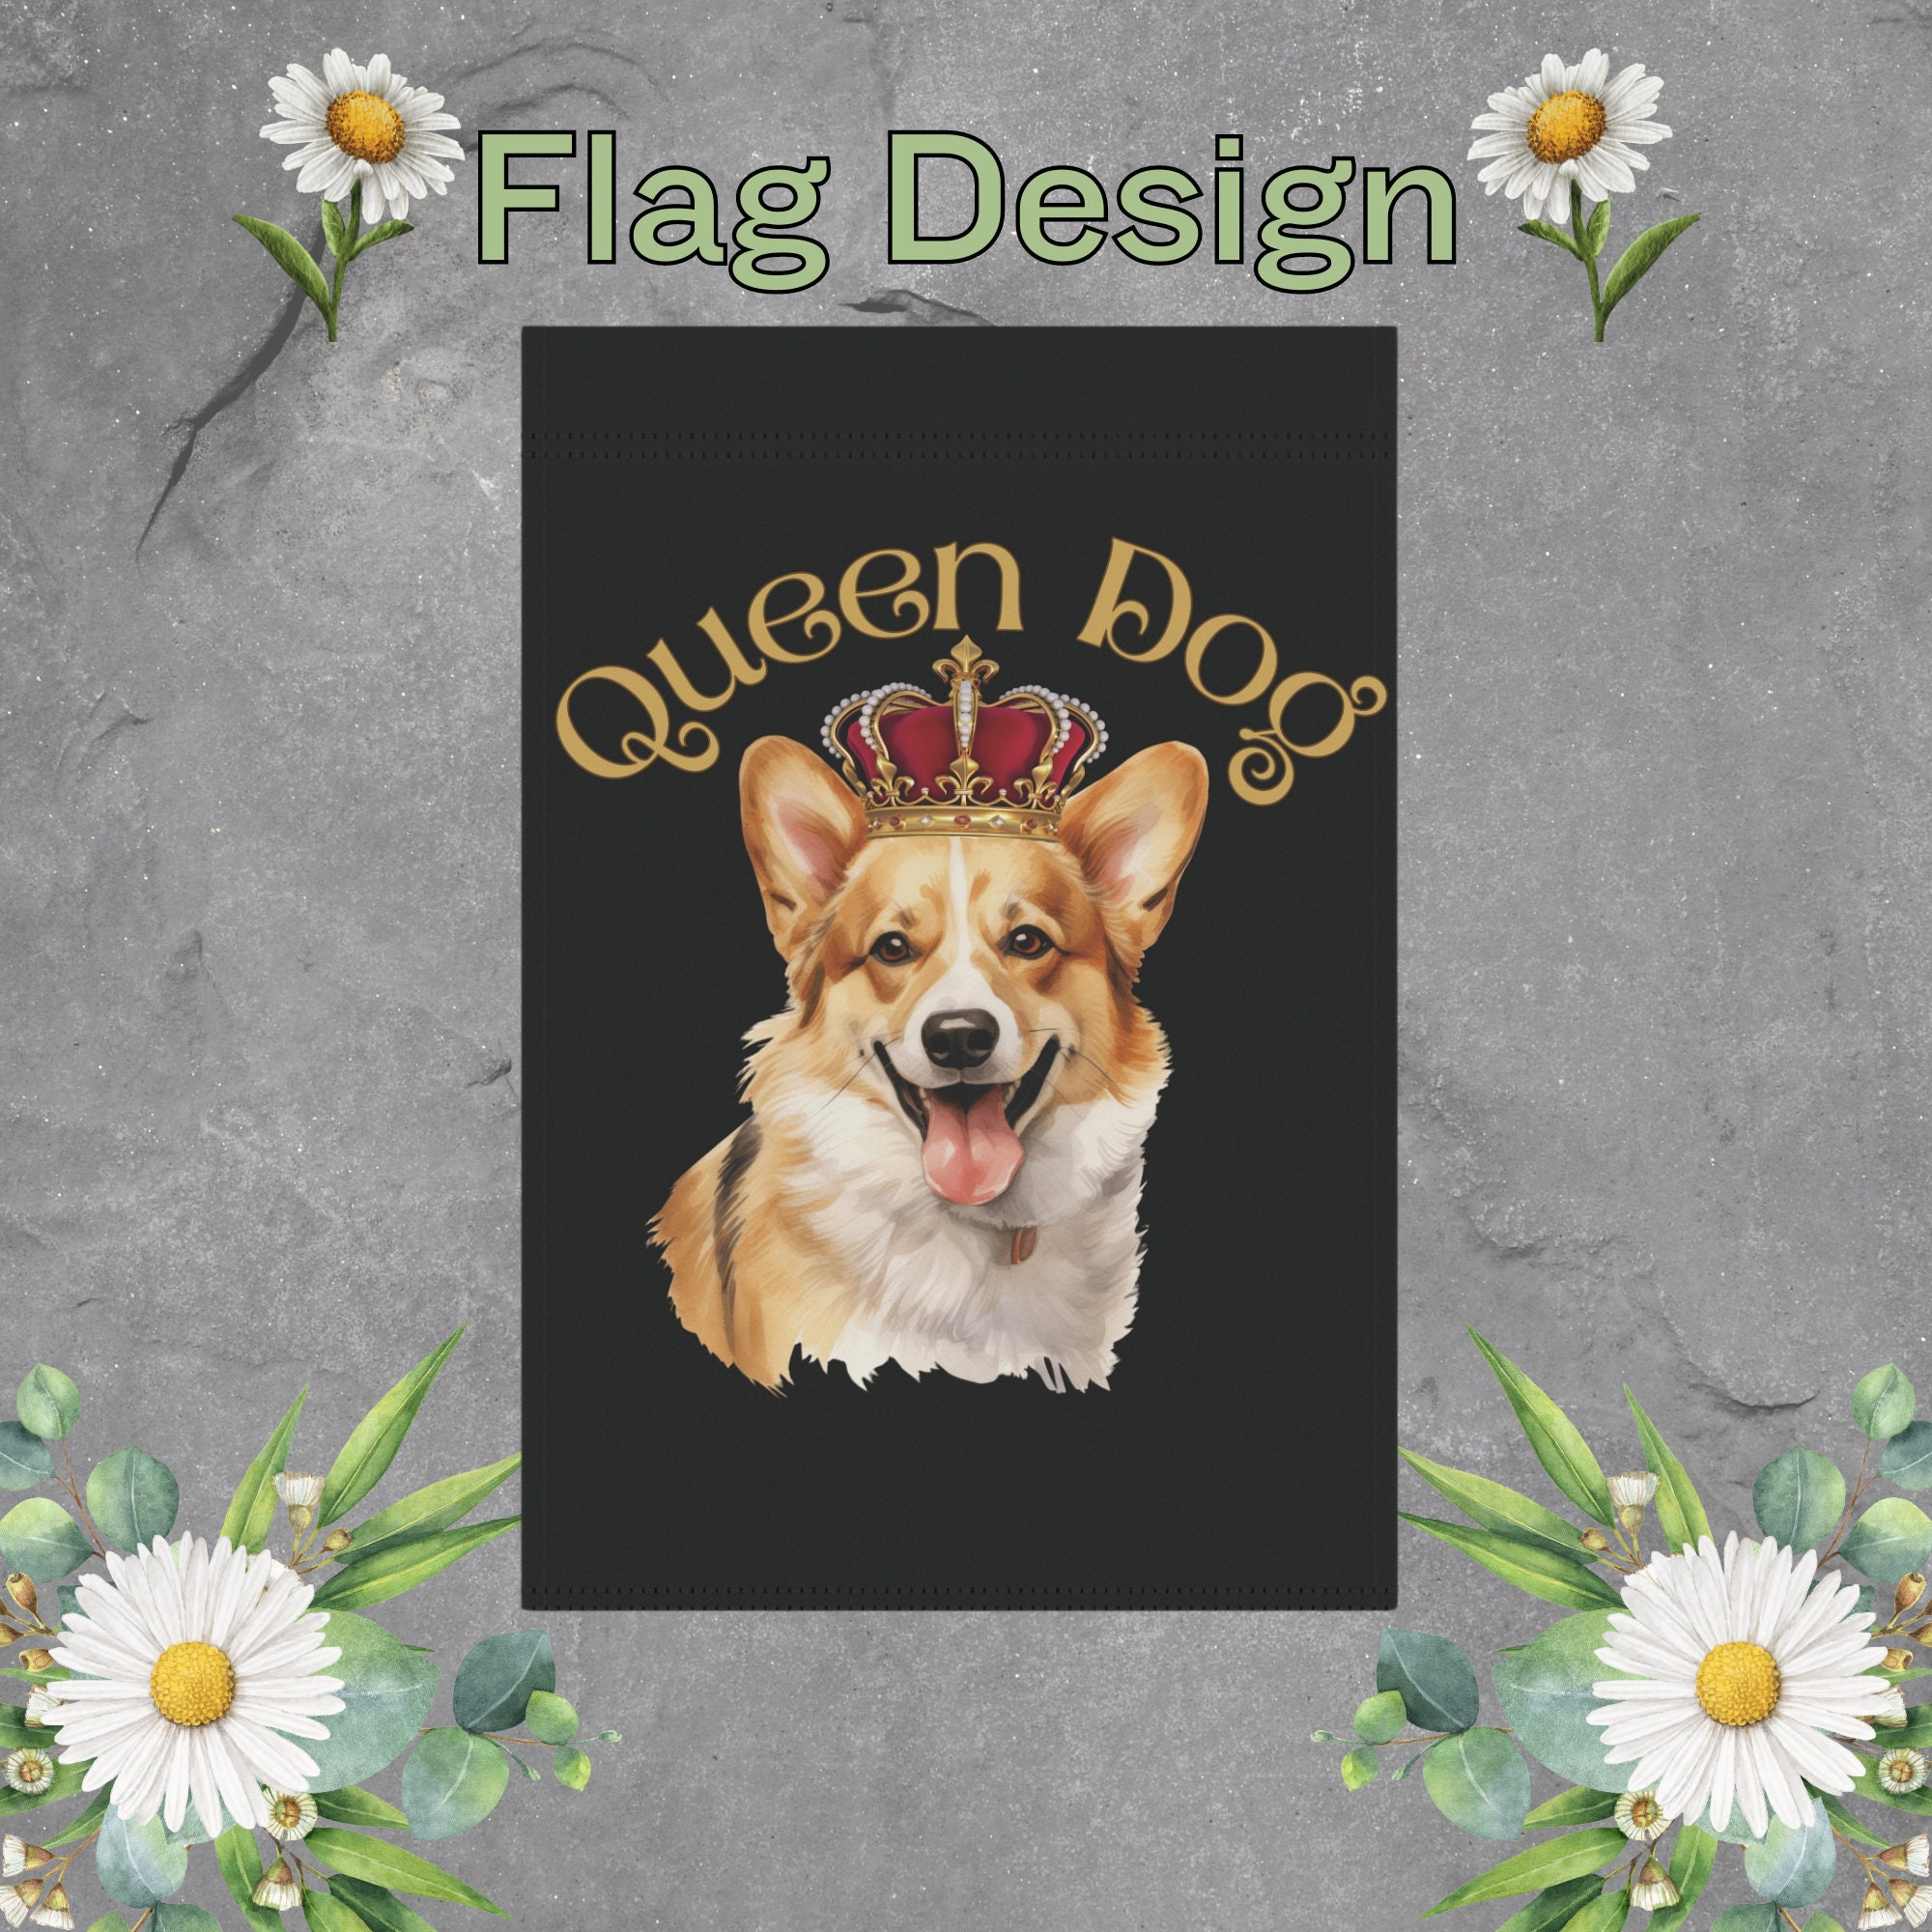 Corgi Garden Flag, Queen Dog Garden Flag